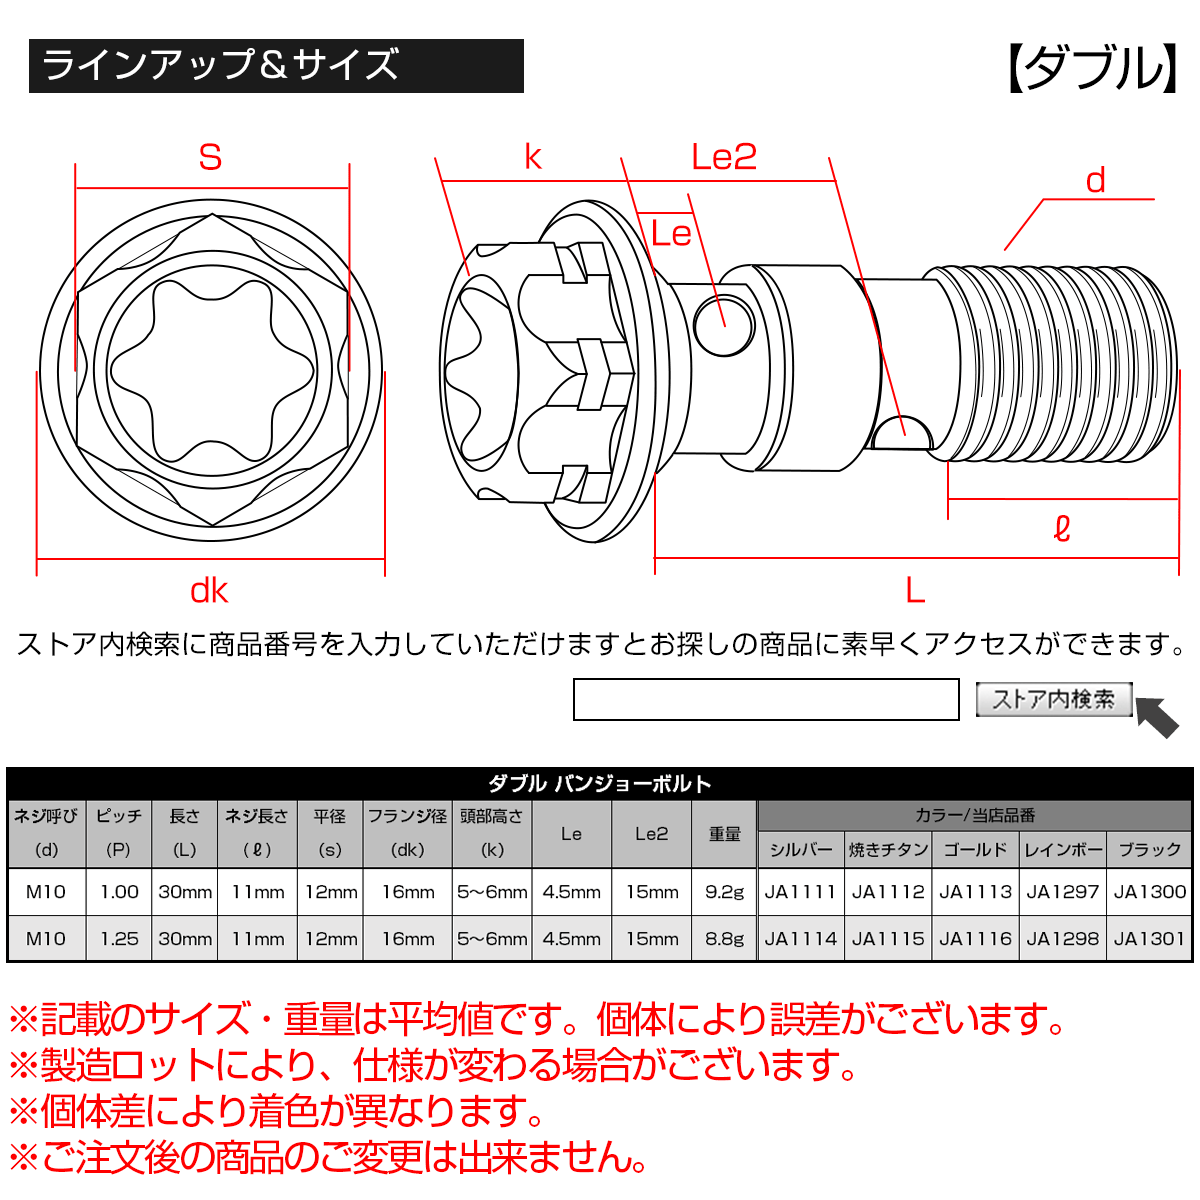 64チタン製 バンジョーボルト ブレーキライン M10 P1.00 トルクス穴 デザインボルト レインボー JA1295_画像5